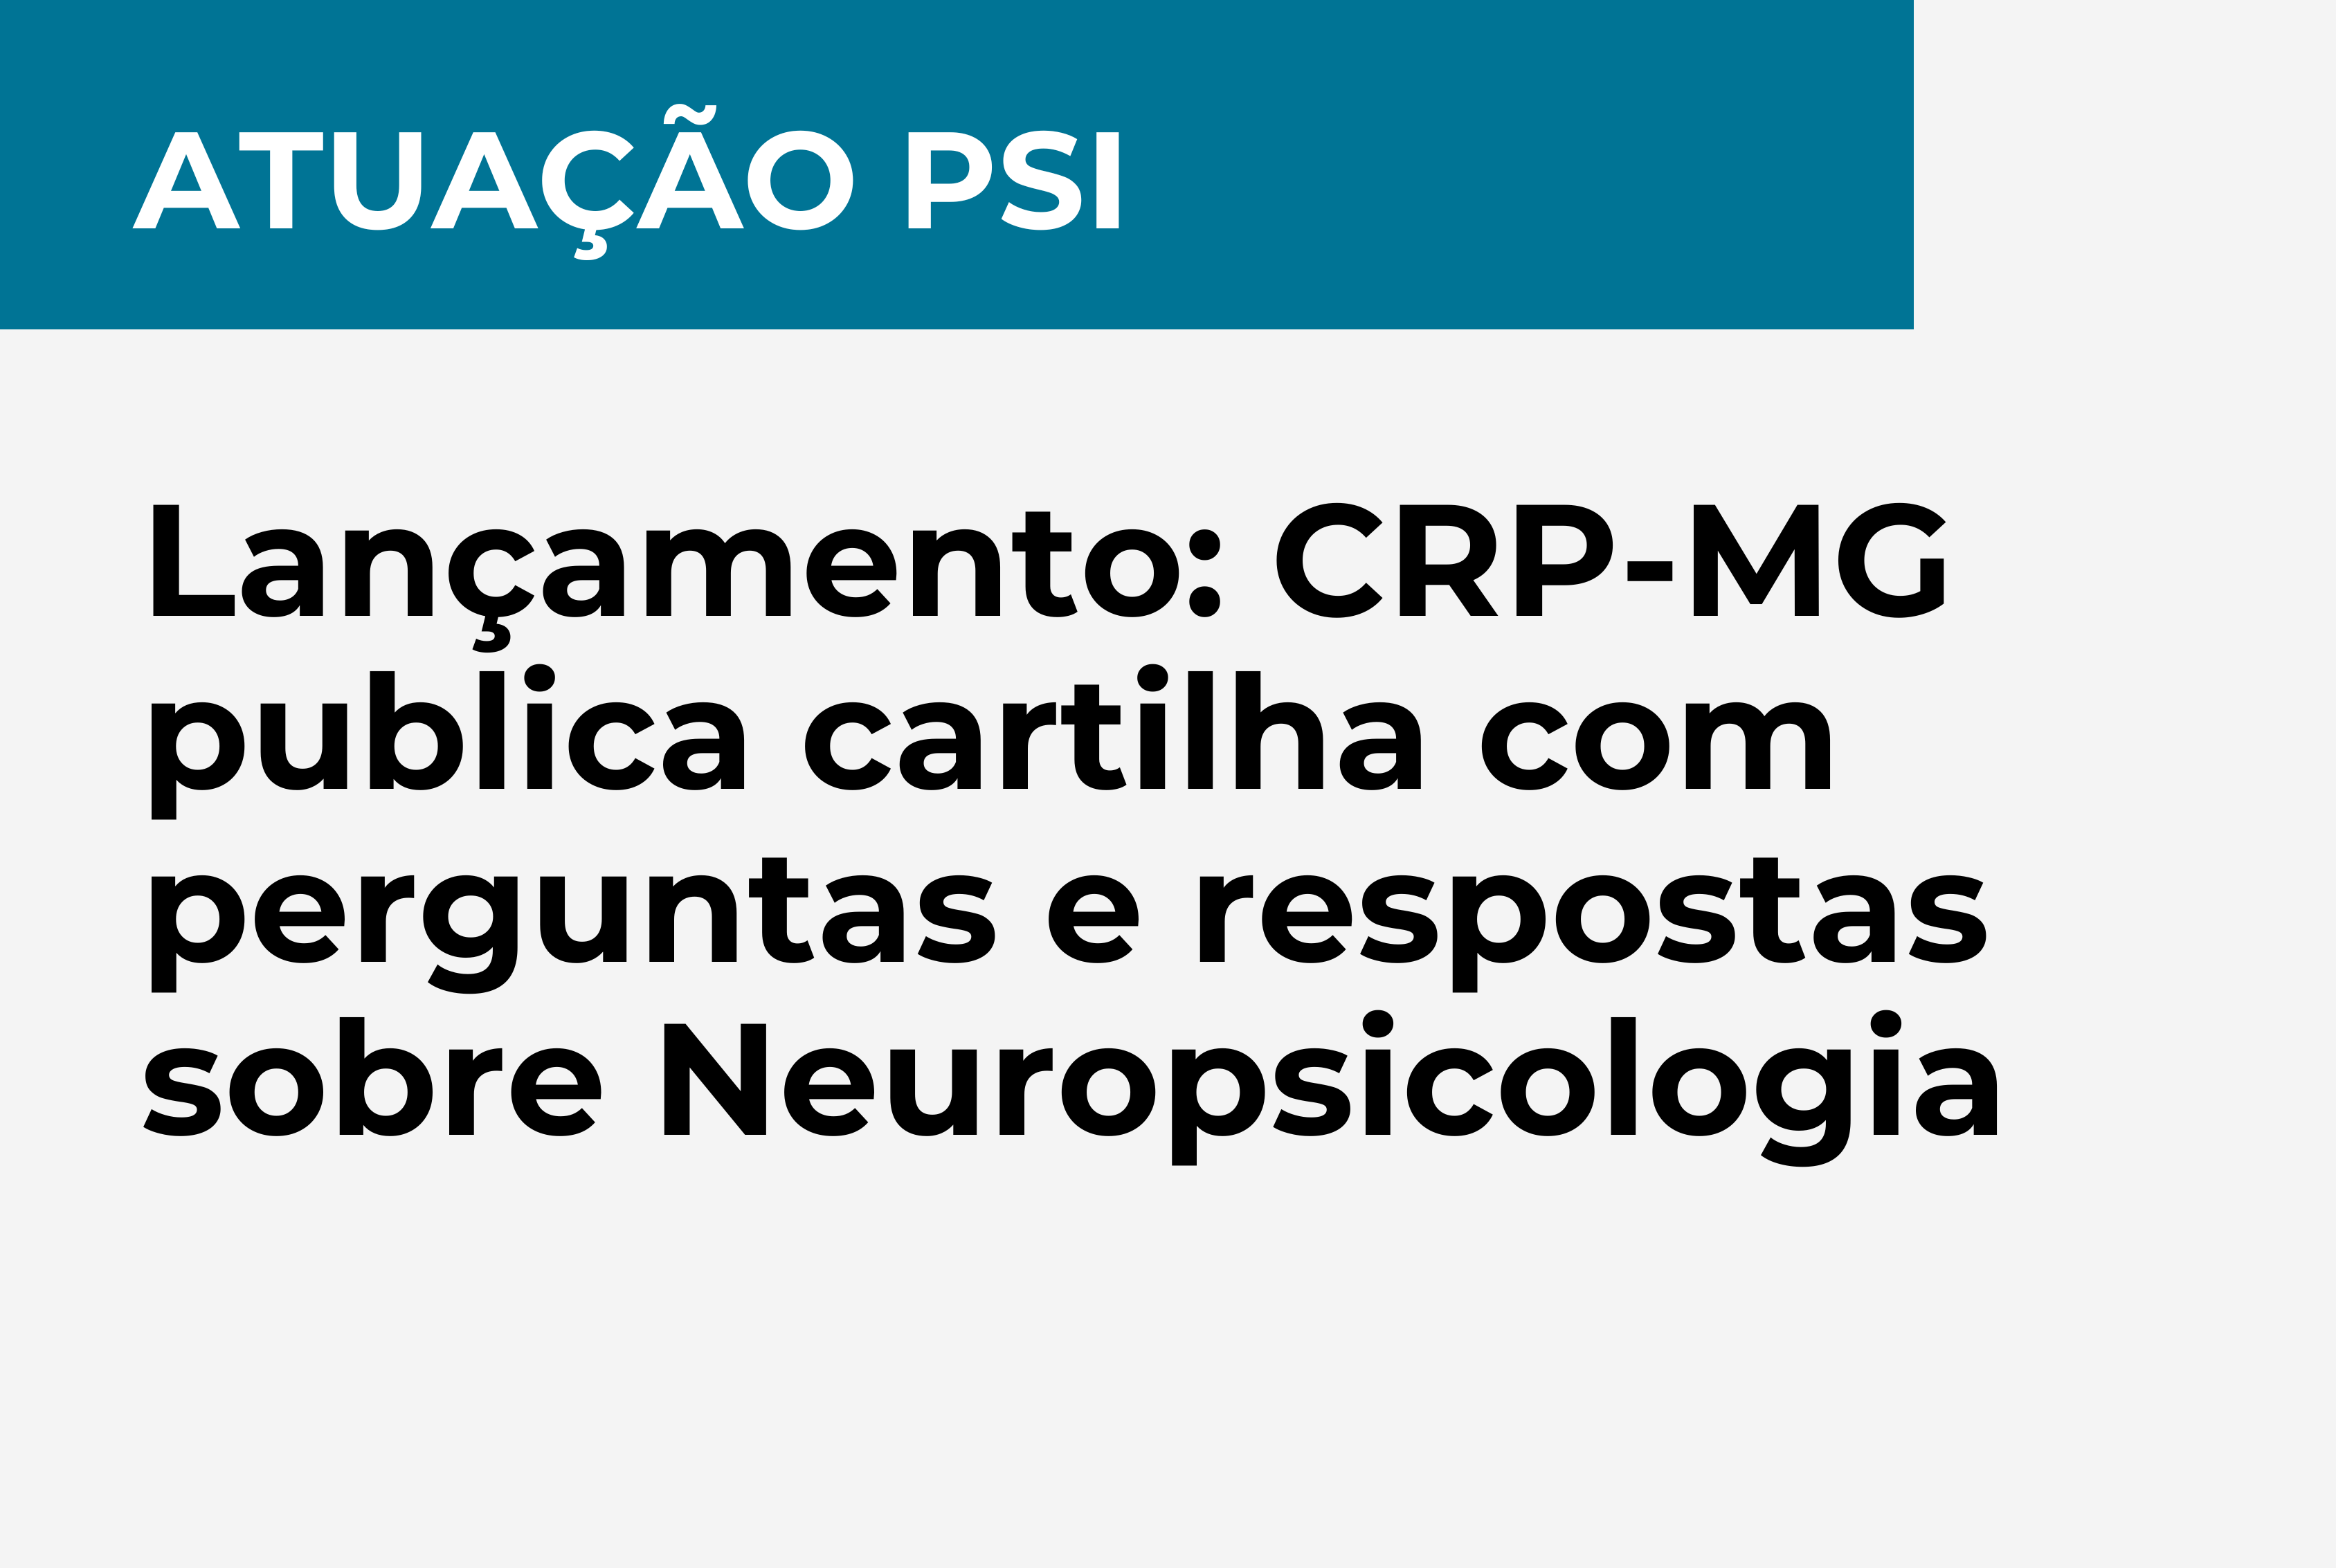 Lançamento: CRP-MG publica cartilha com perguntas e respostas sobre Neuropsicologia